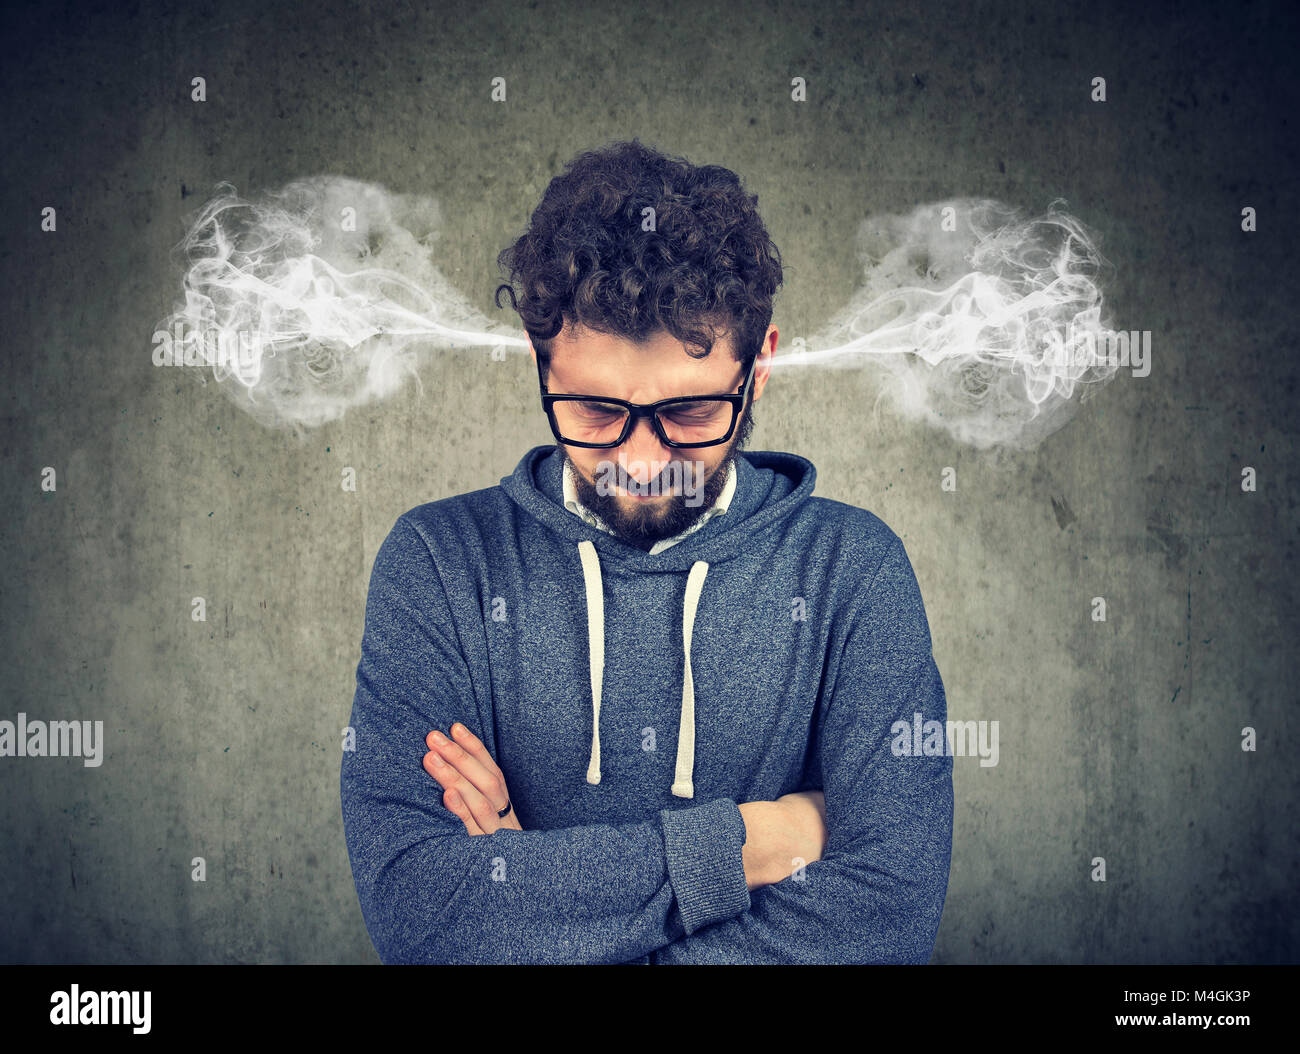 Zornigen jungen Mann, Blasen Dampf aus den Ohren, zu Nervenzusammenbruch auf grauem Hintergrund isoliert haben. Negative menschliche Emotionen Gesicht expressio Stockfoto